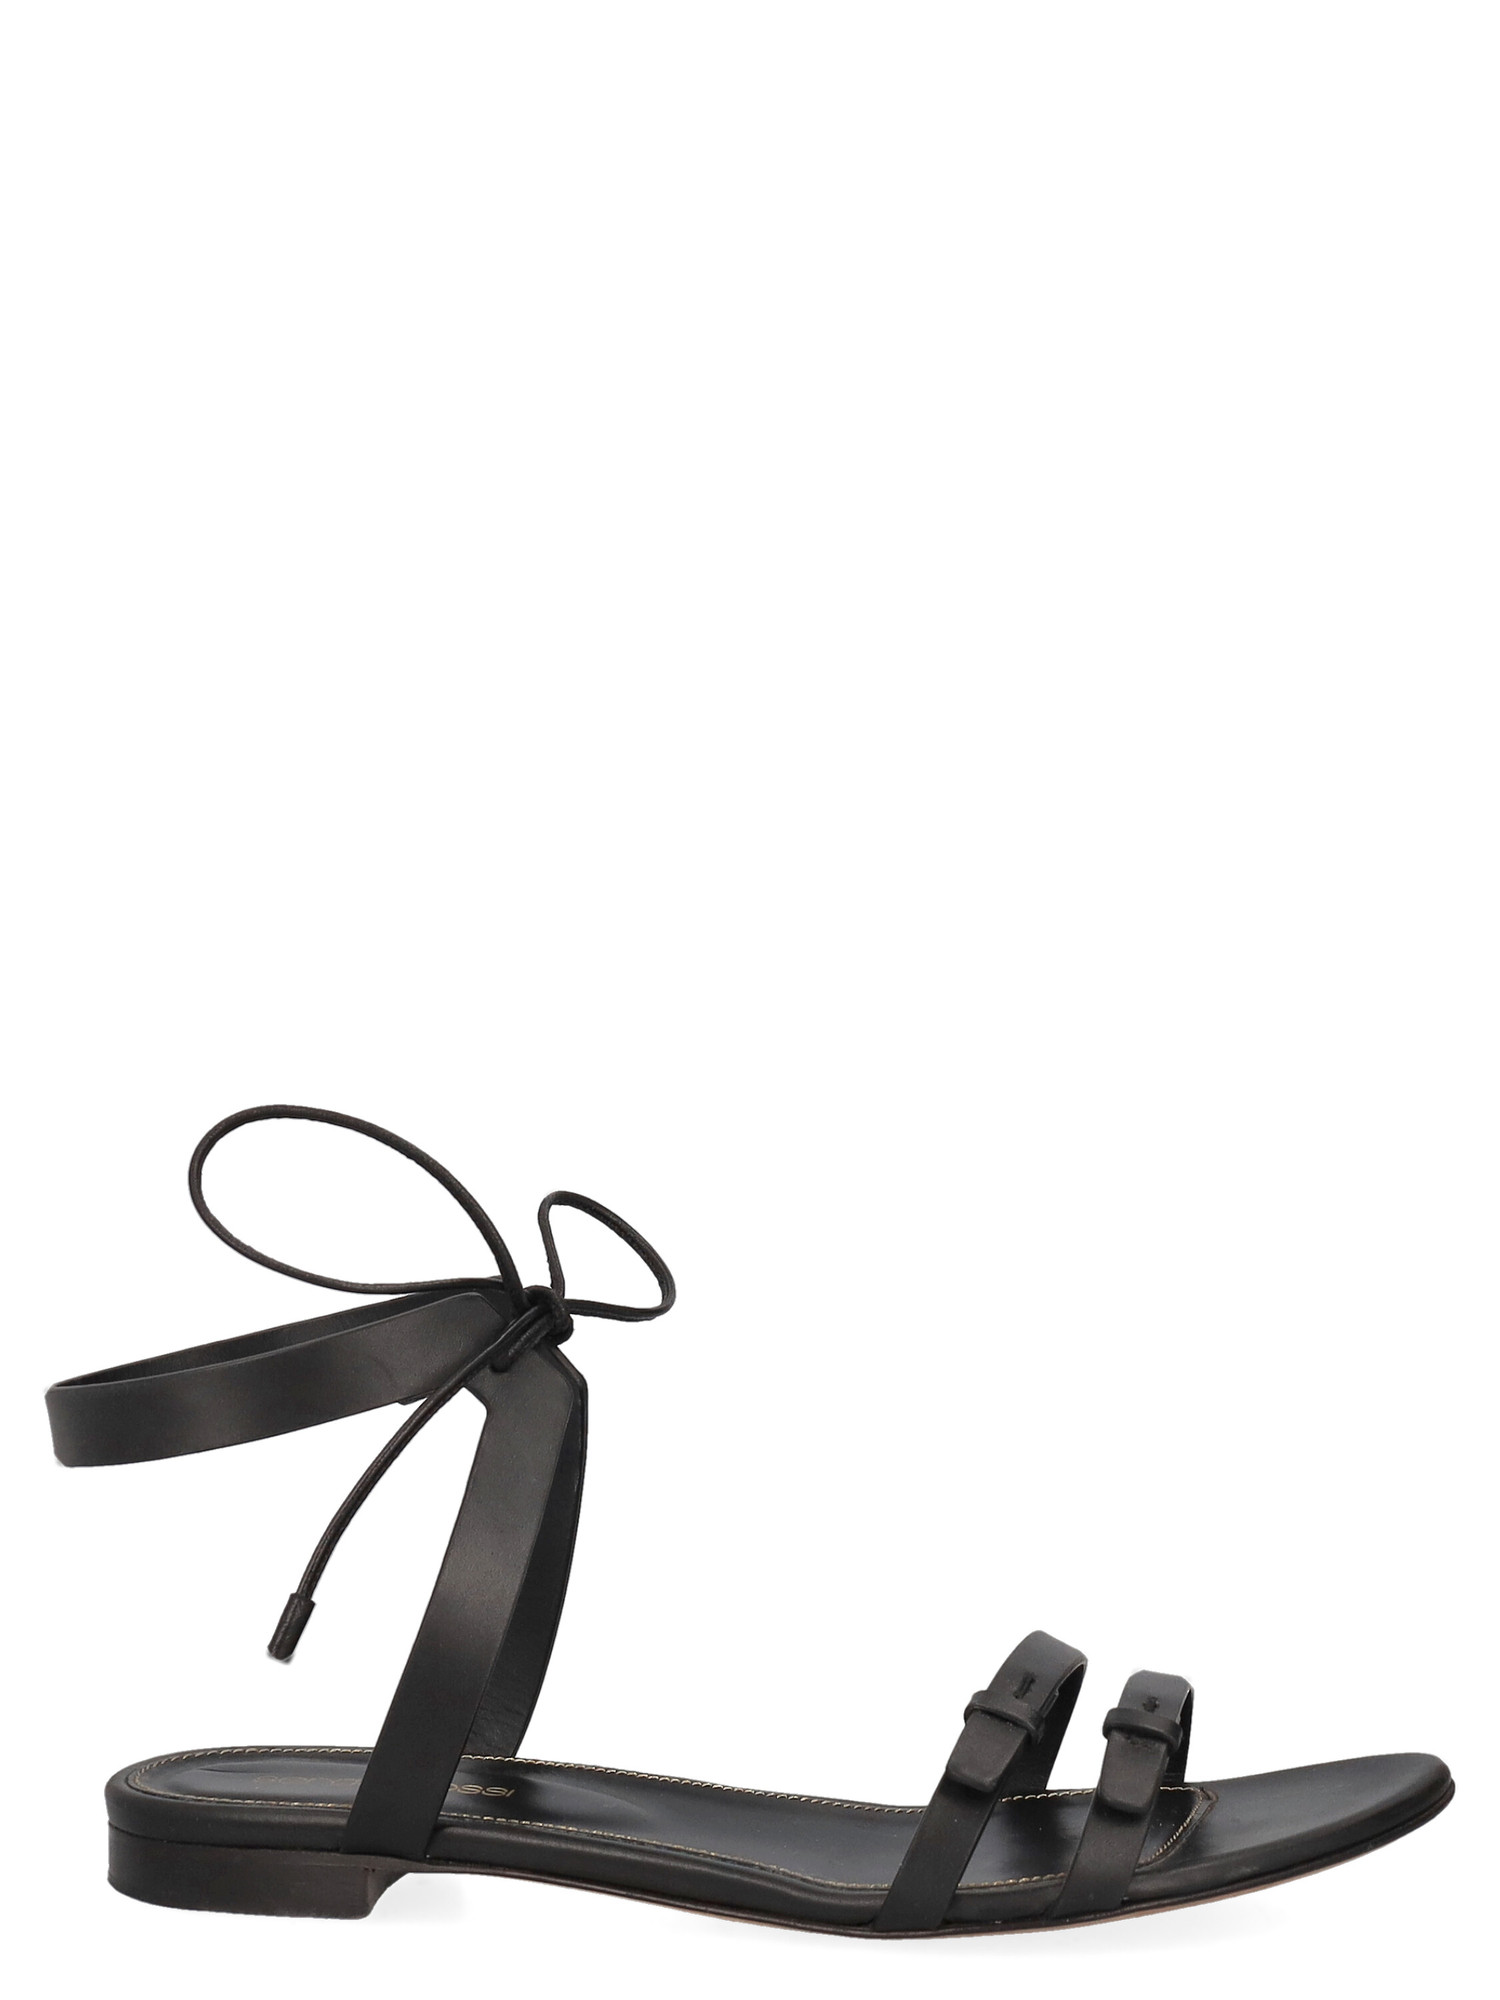 Sandales Pour Femme - Sergio Rossi - En Leather Black - Taille: IT 38.5 - EU 38.5